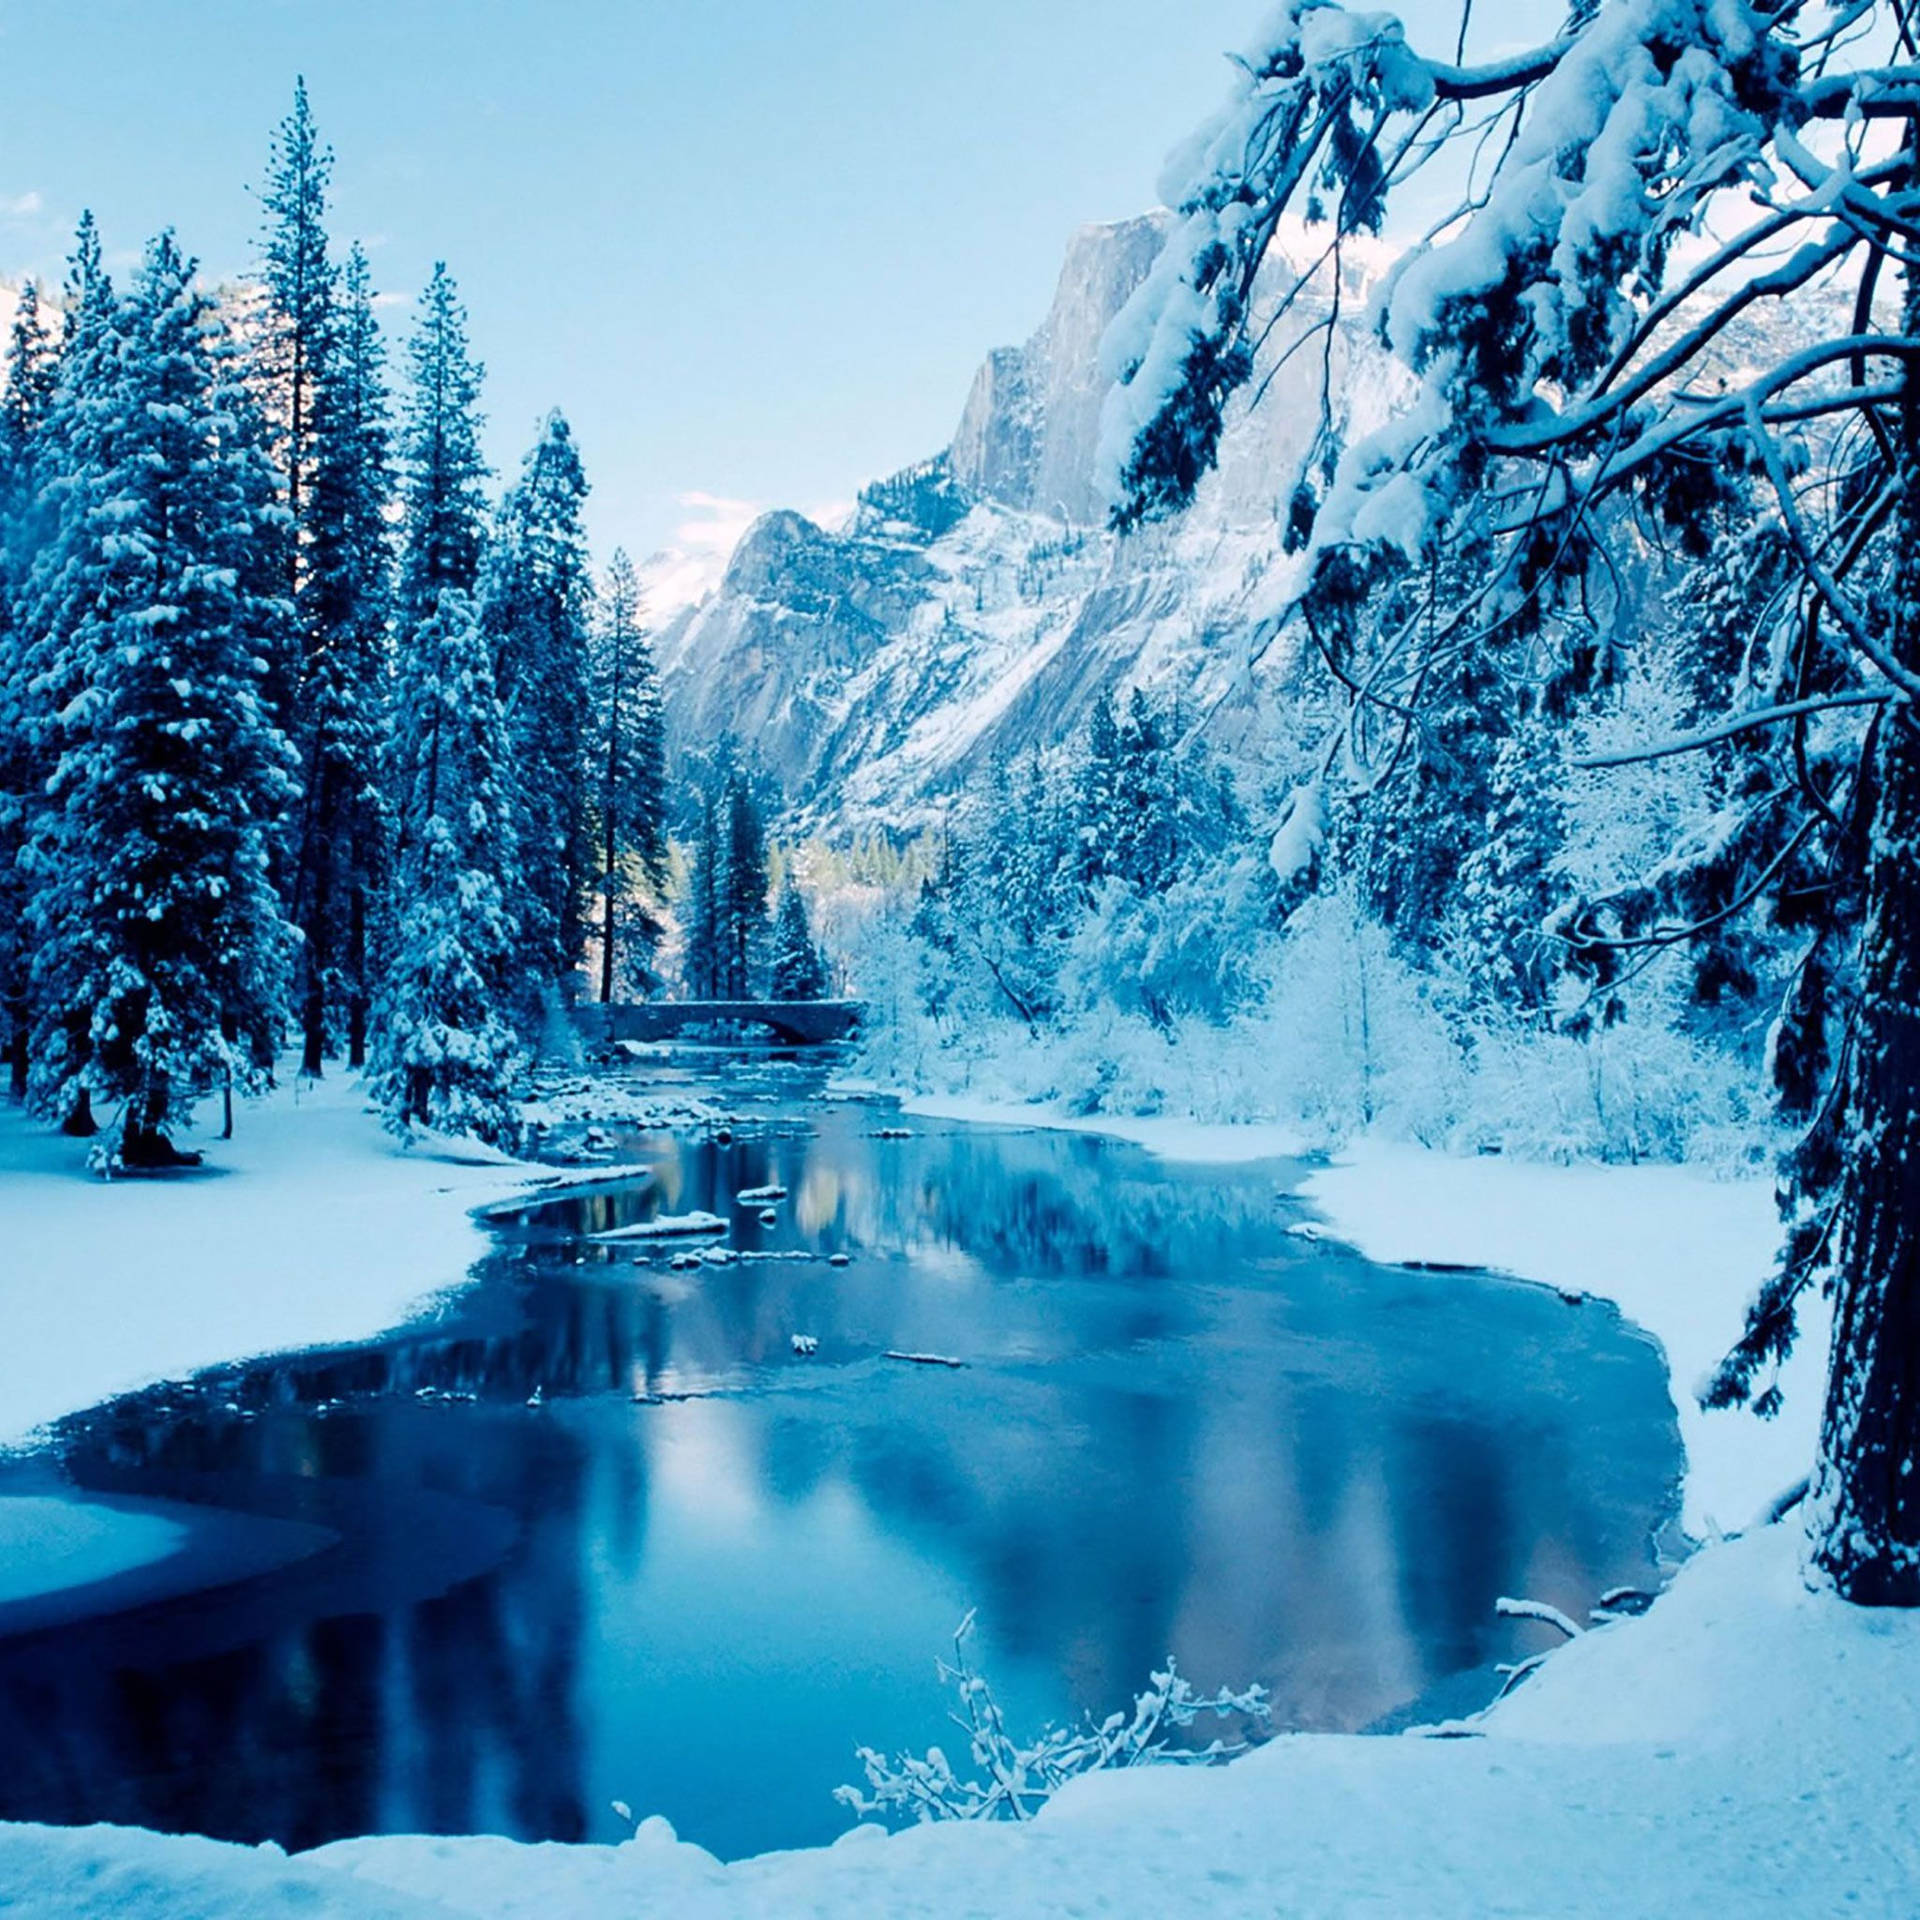 4k Ipad Winter Landscape Wallpaper